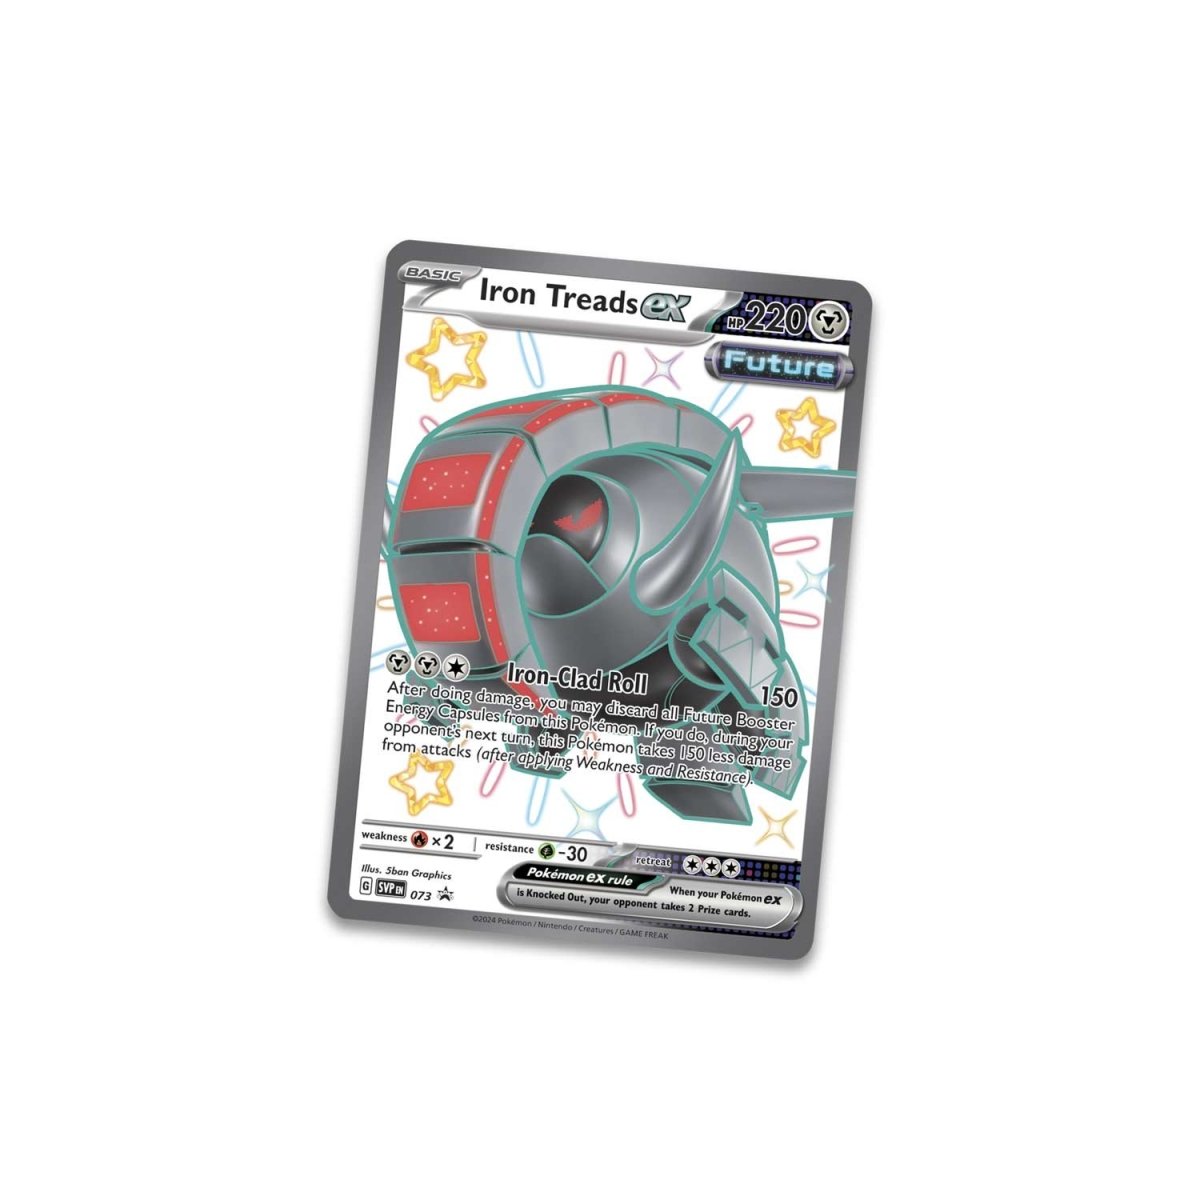 Pokémon TCG: Scarlet & Violet-Paldean Fates Tin (Shiny Iron Treads ex)